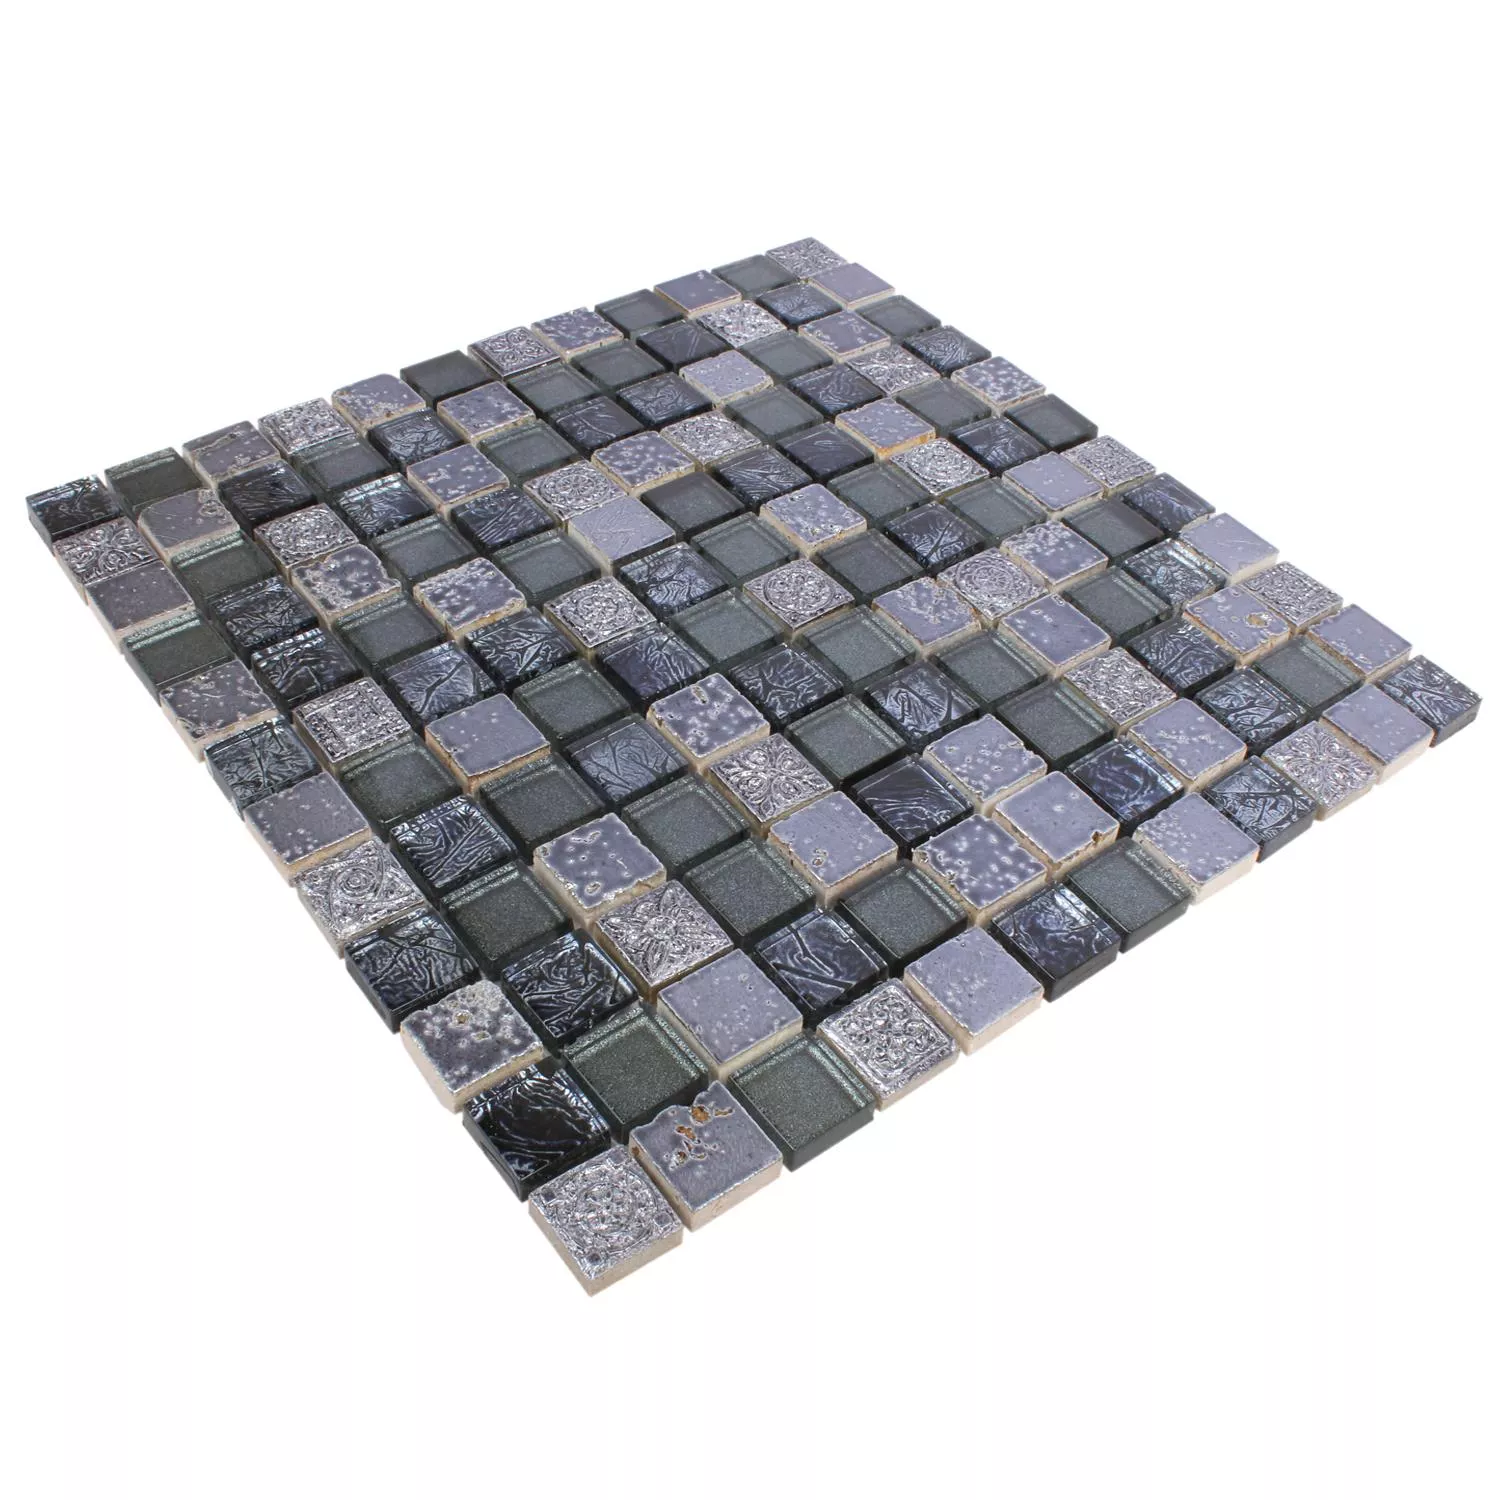 Sample Mosaic Tiles Glass Natural Stone Maya